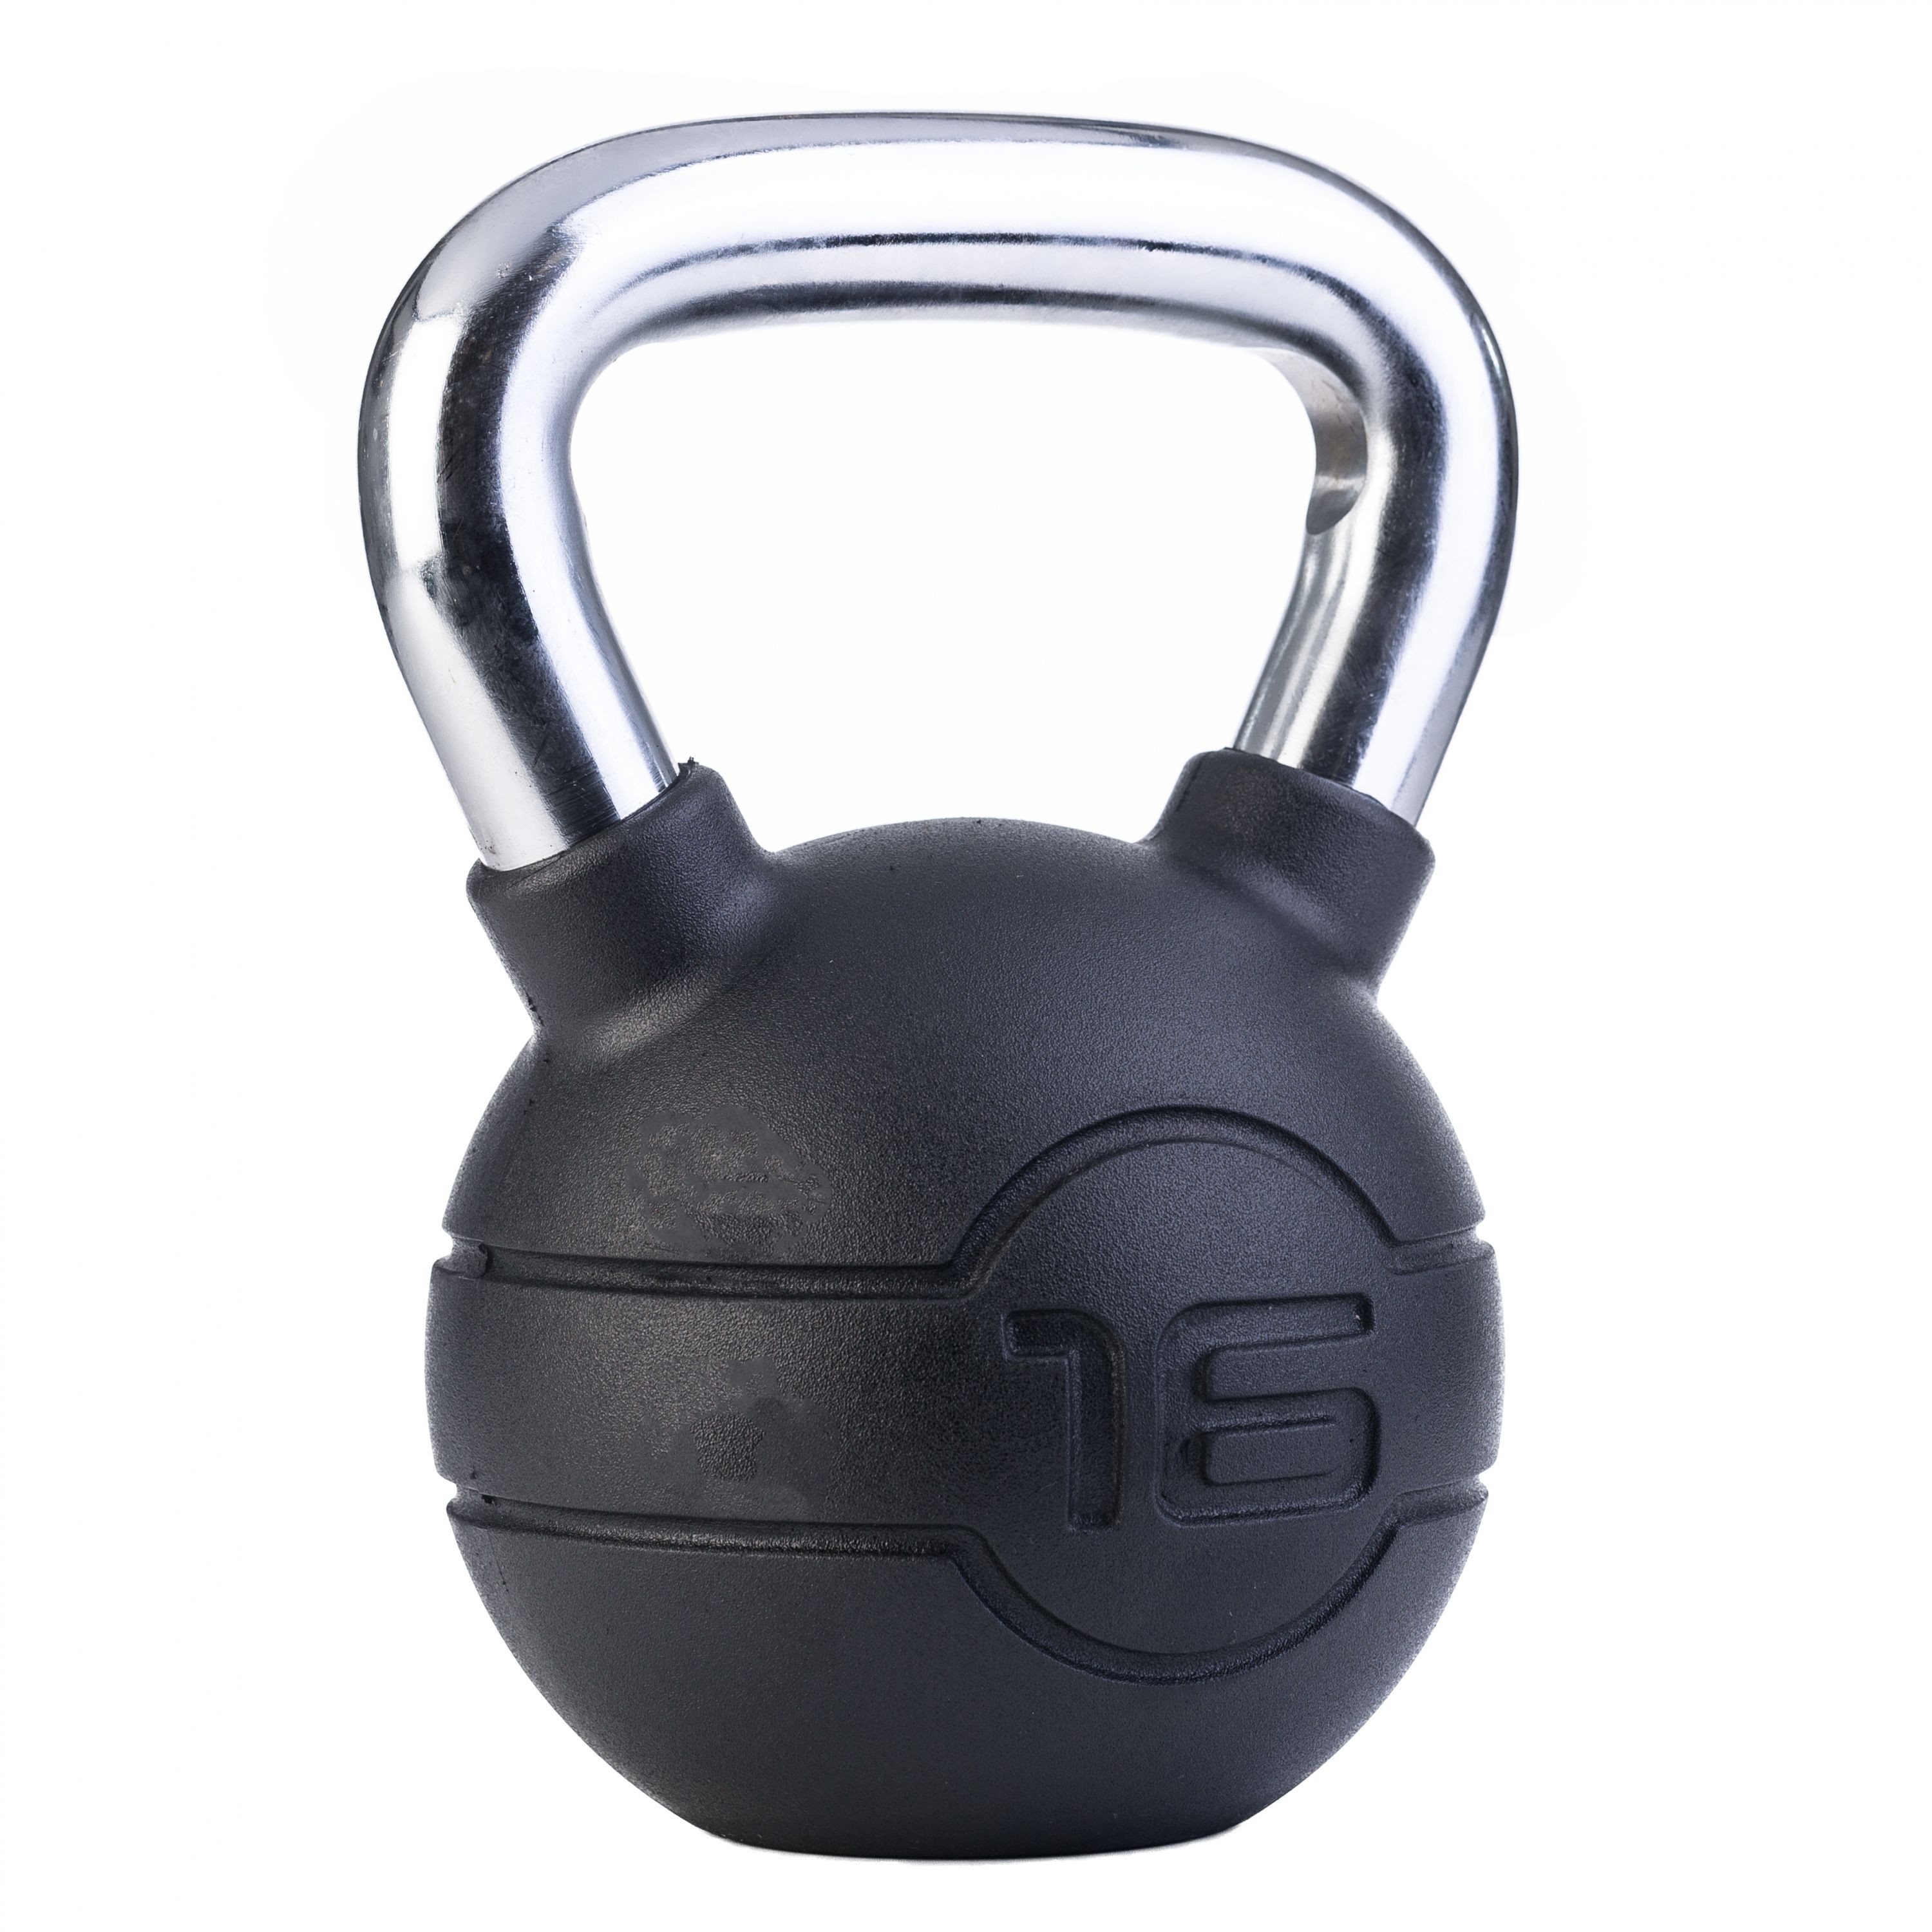 16kg Black rubber kettlebell with handle (each) kopen? Ga voor kwaliteit | AStepAhead Chrome/Rubber Kettlebells - AStepAhead